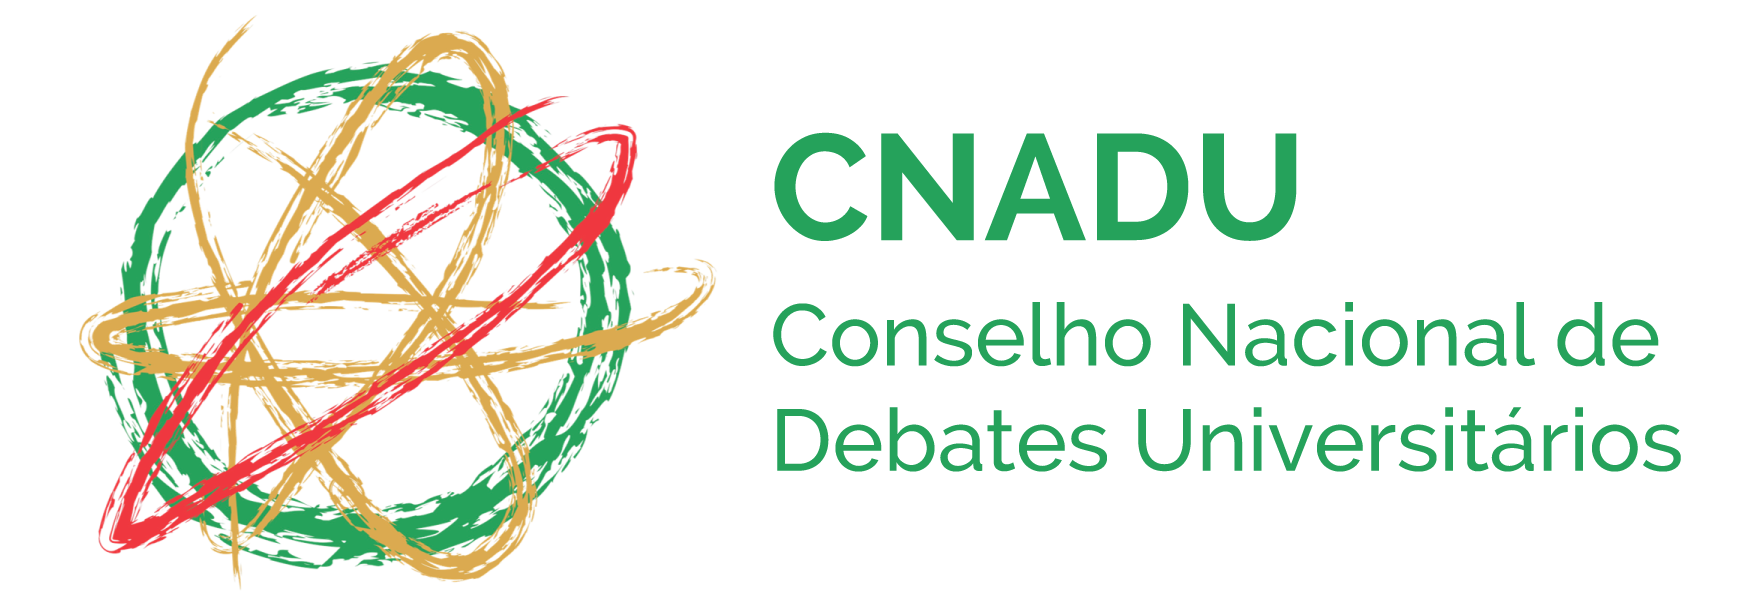 Conselho Nacional de Debates Universitários